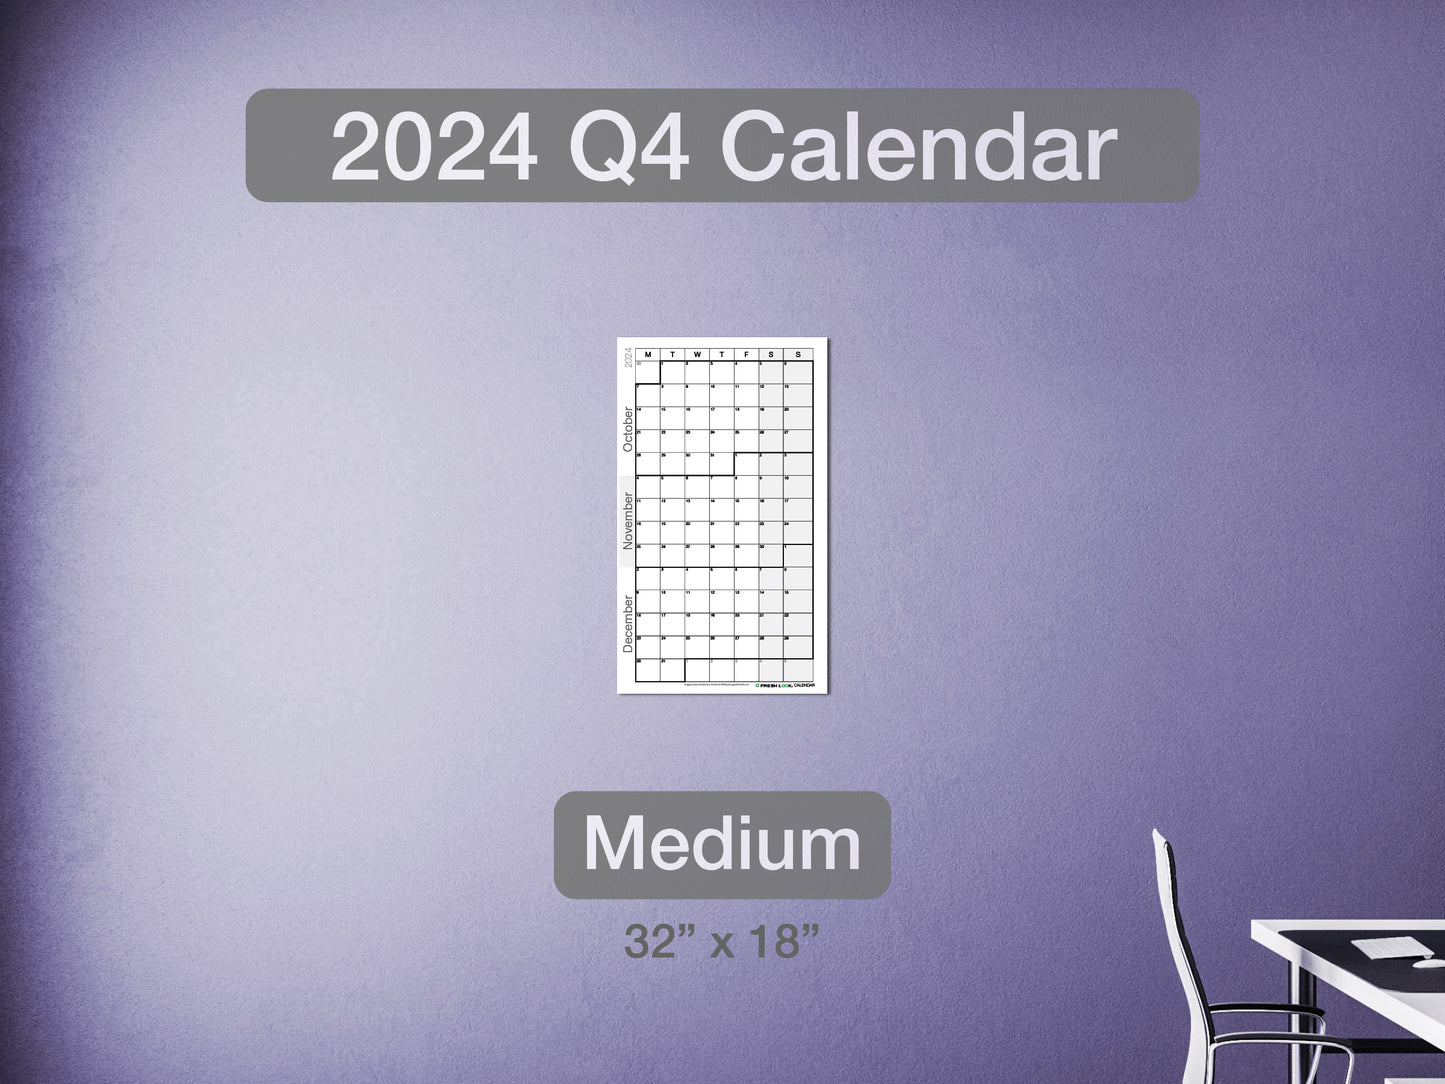 2024 Q4 Calendar Medium